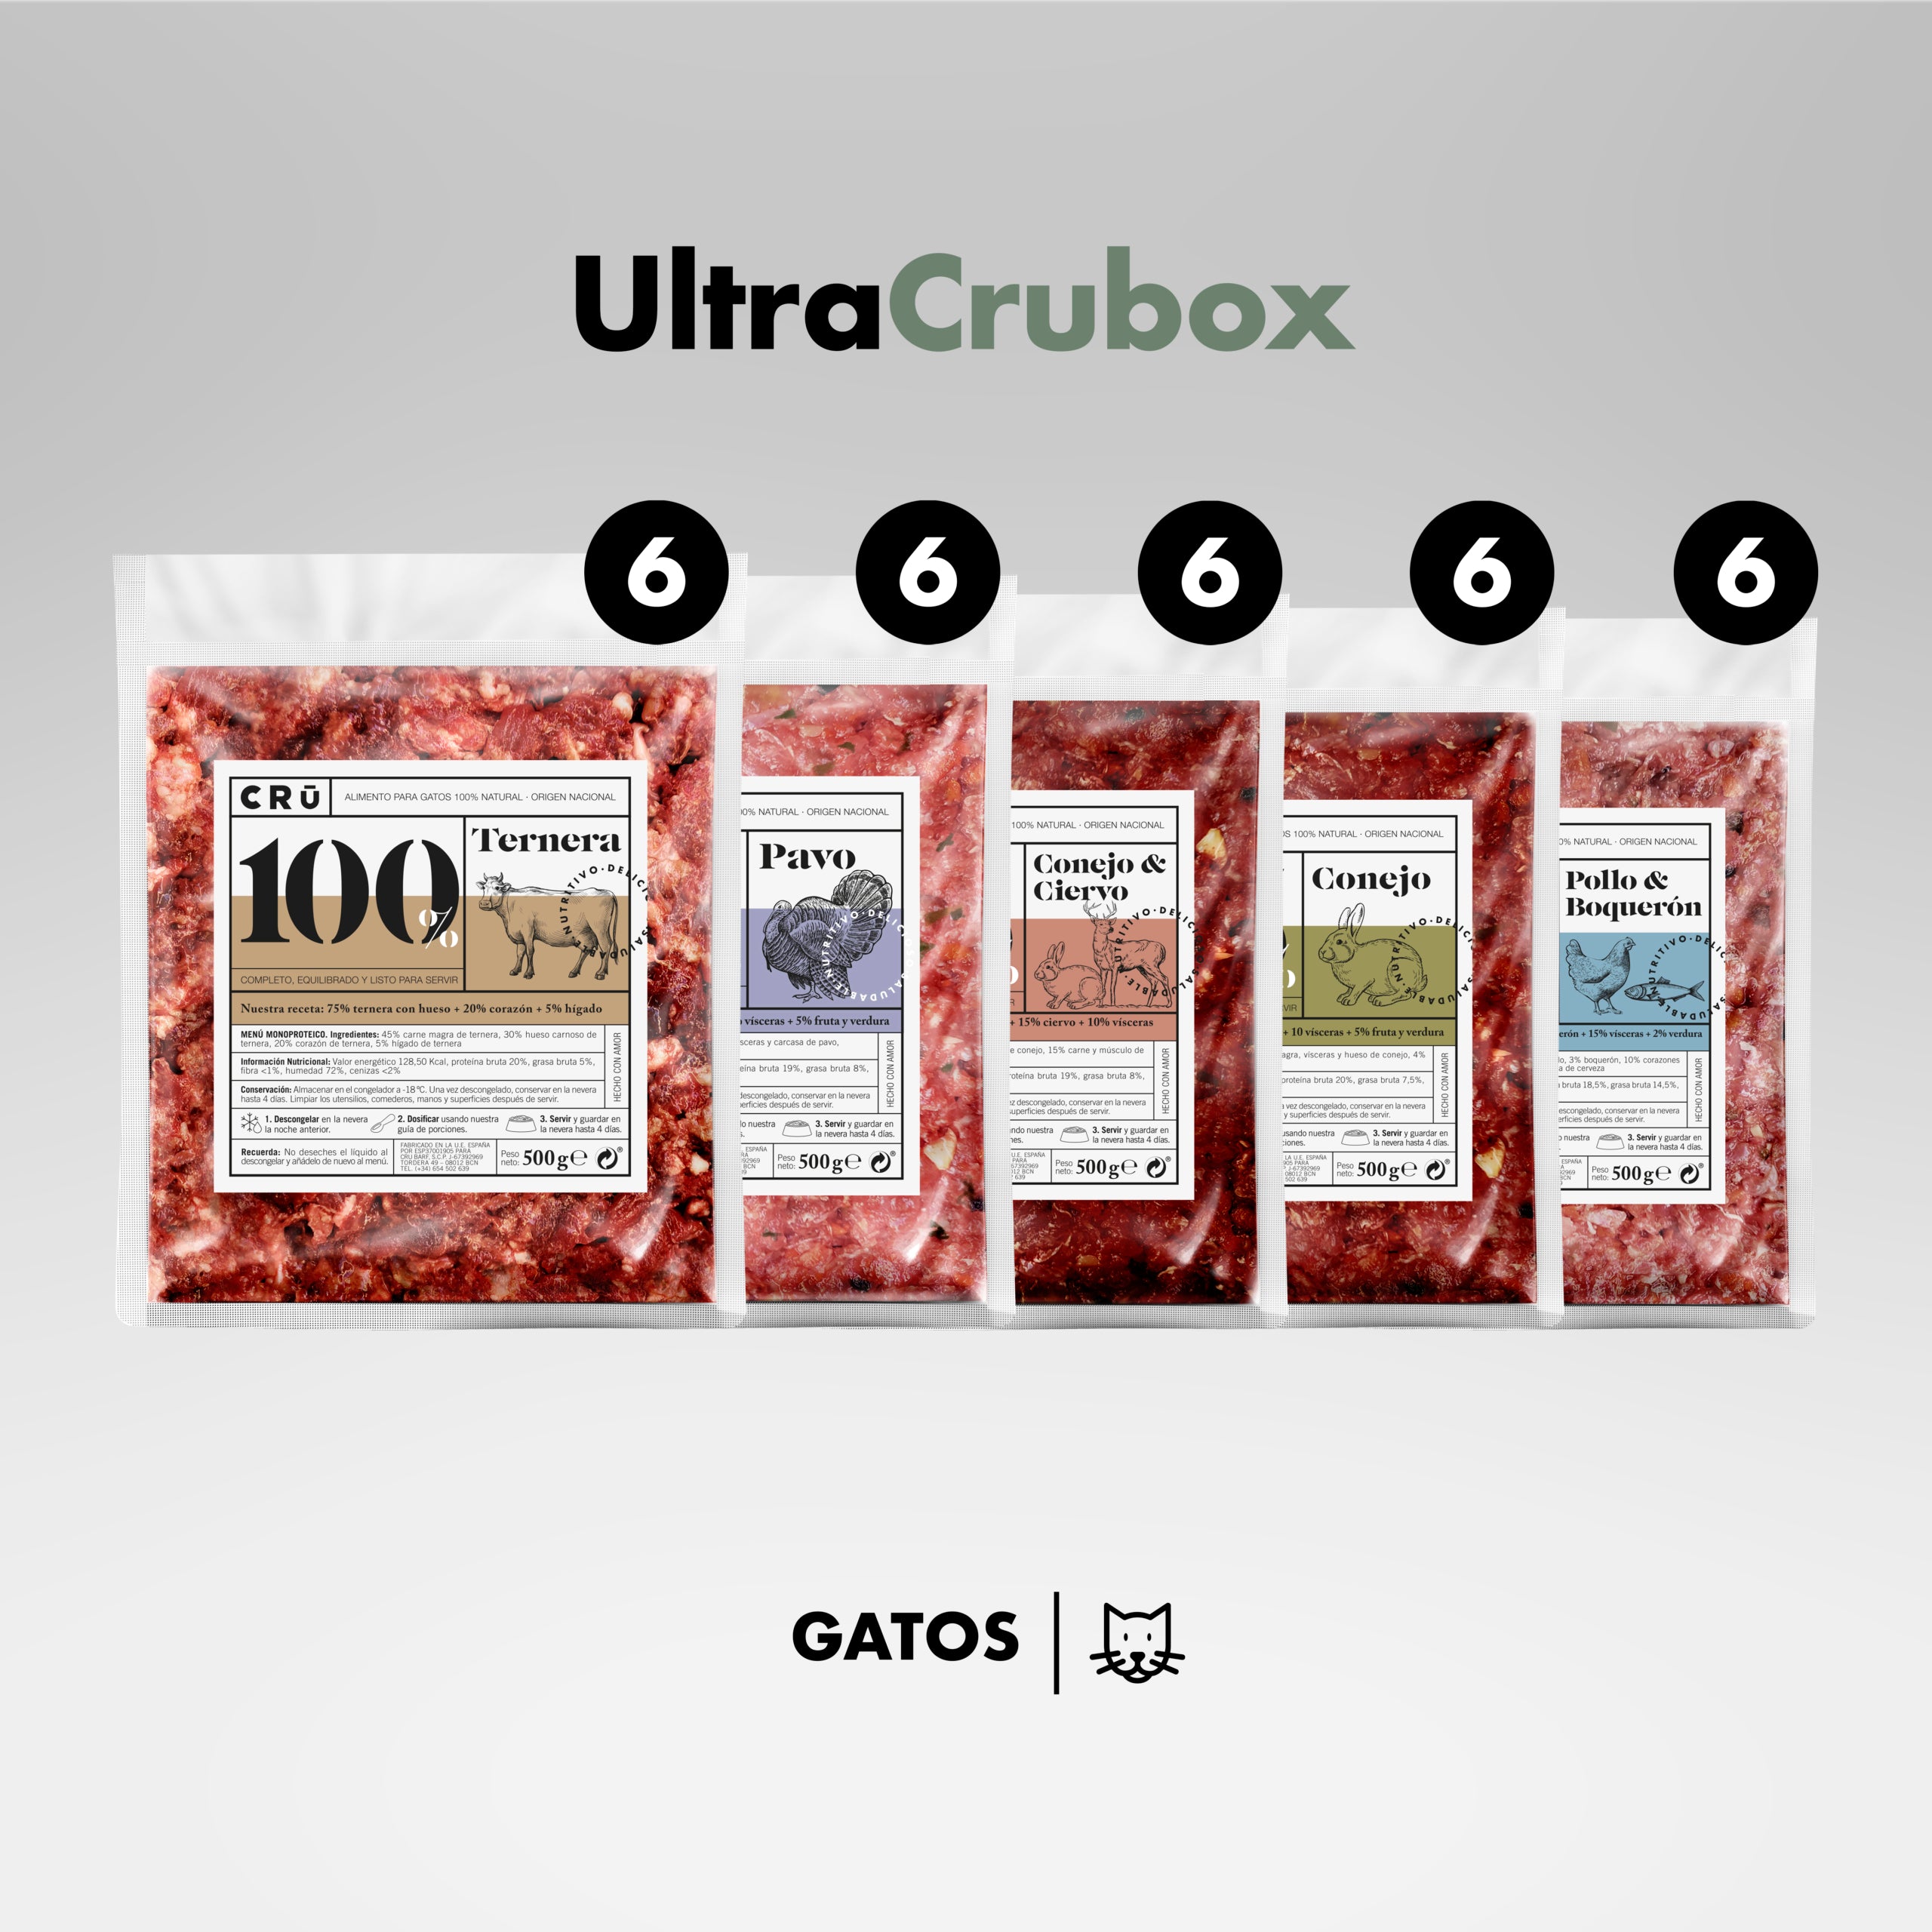 ULTRACRUBOX_GATOS